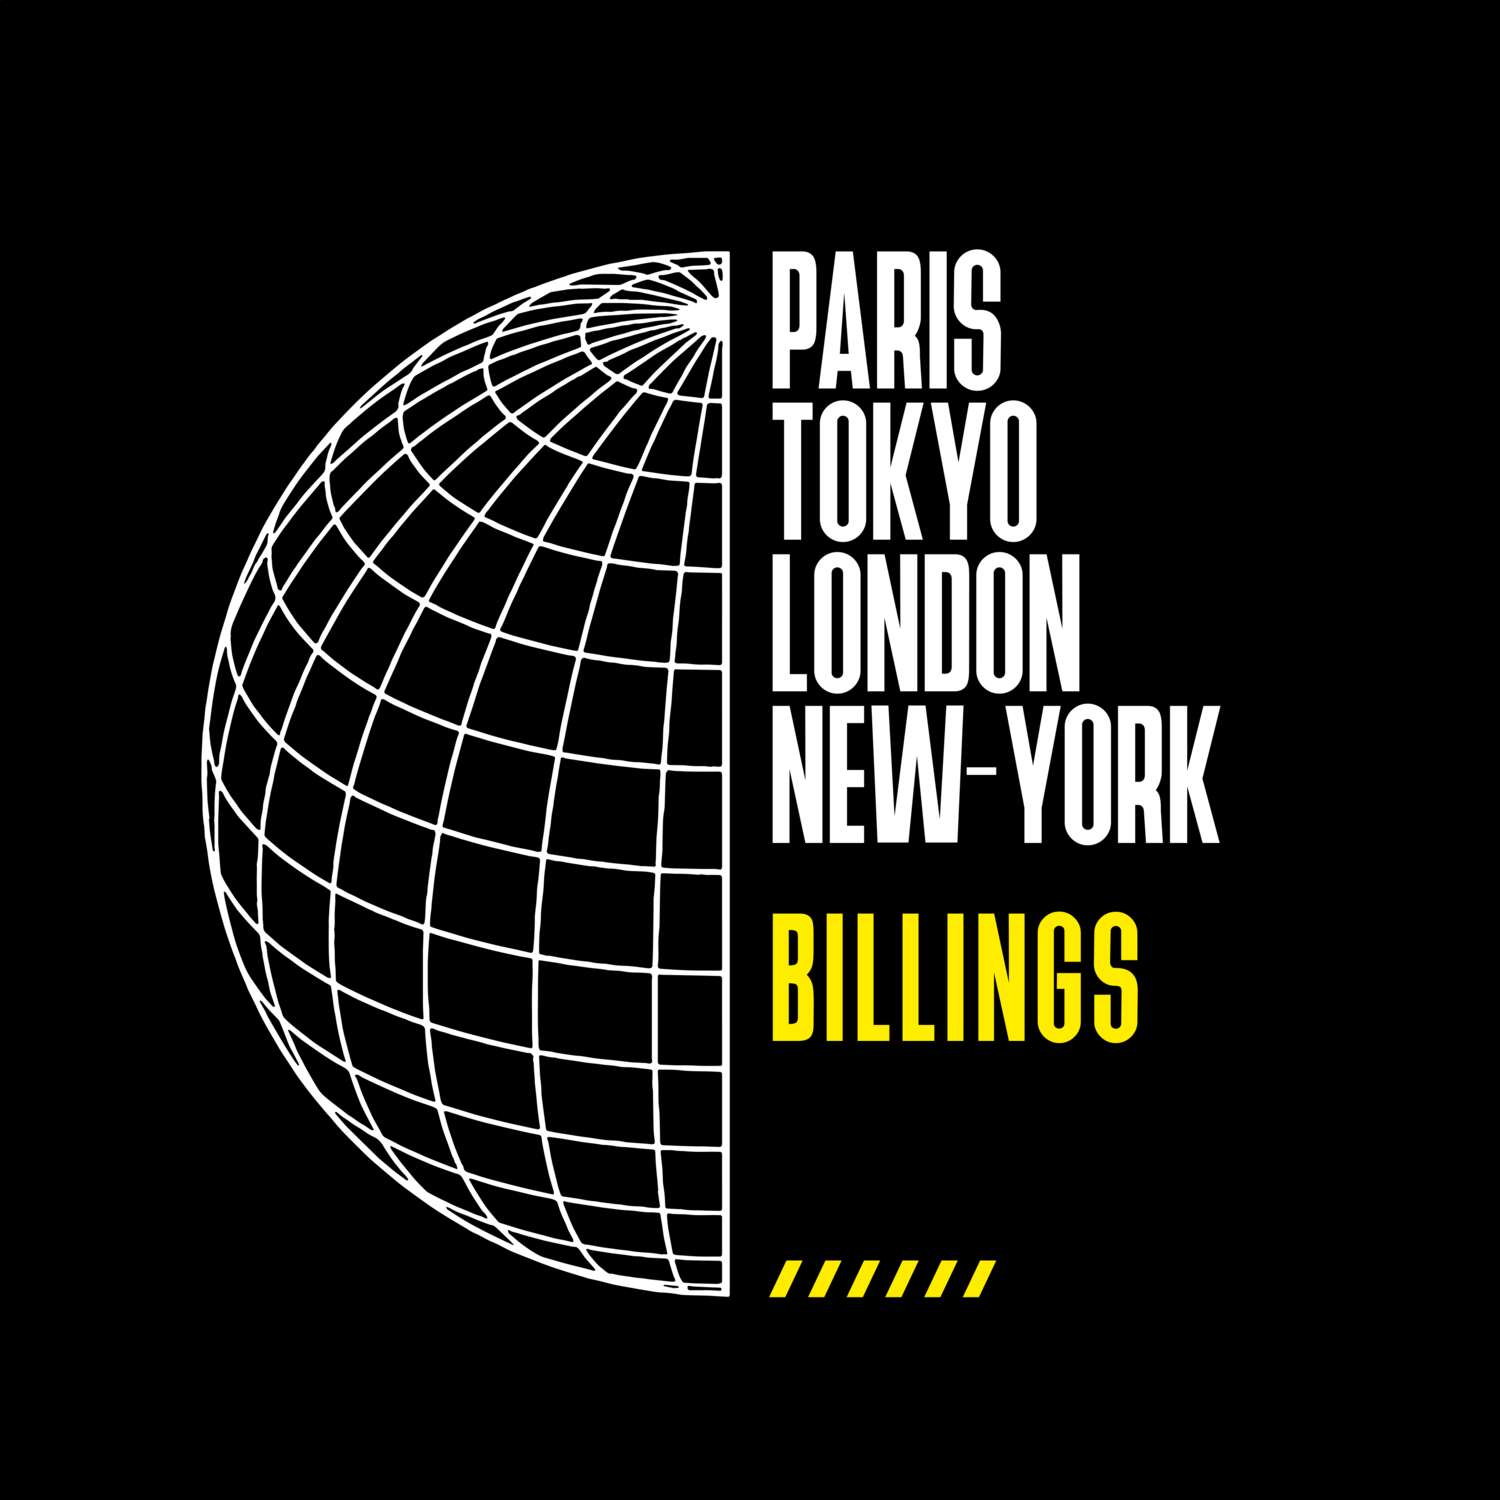 Billings T-Shirt »Paris Tokyo London«